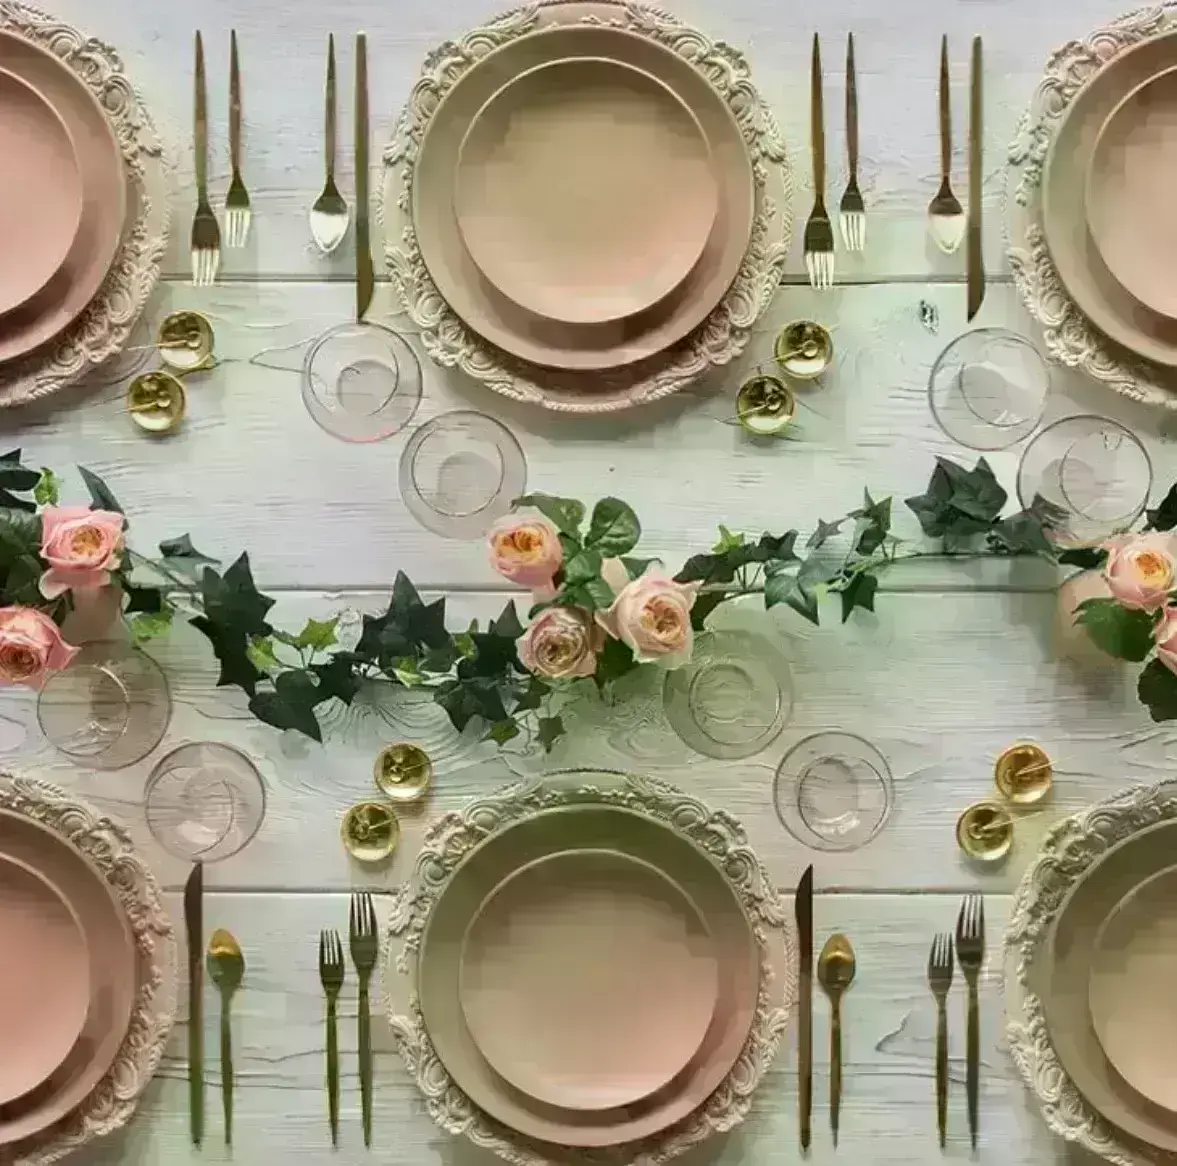 Aparelho de Jantar 42 Peças Porcelana Rosa com Flores Douradas